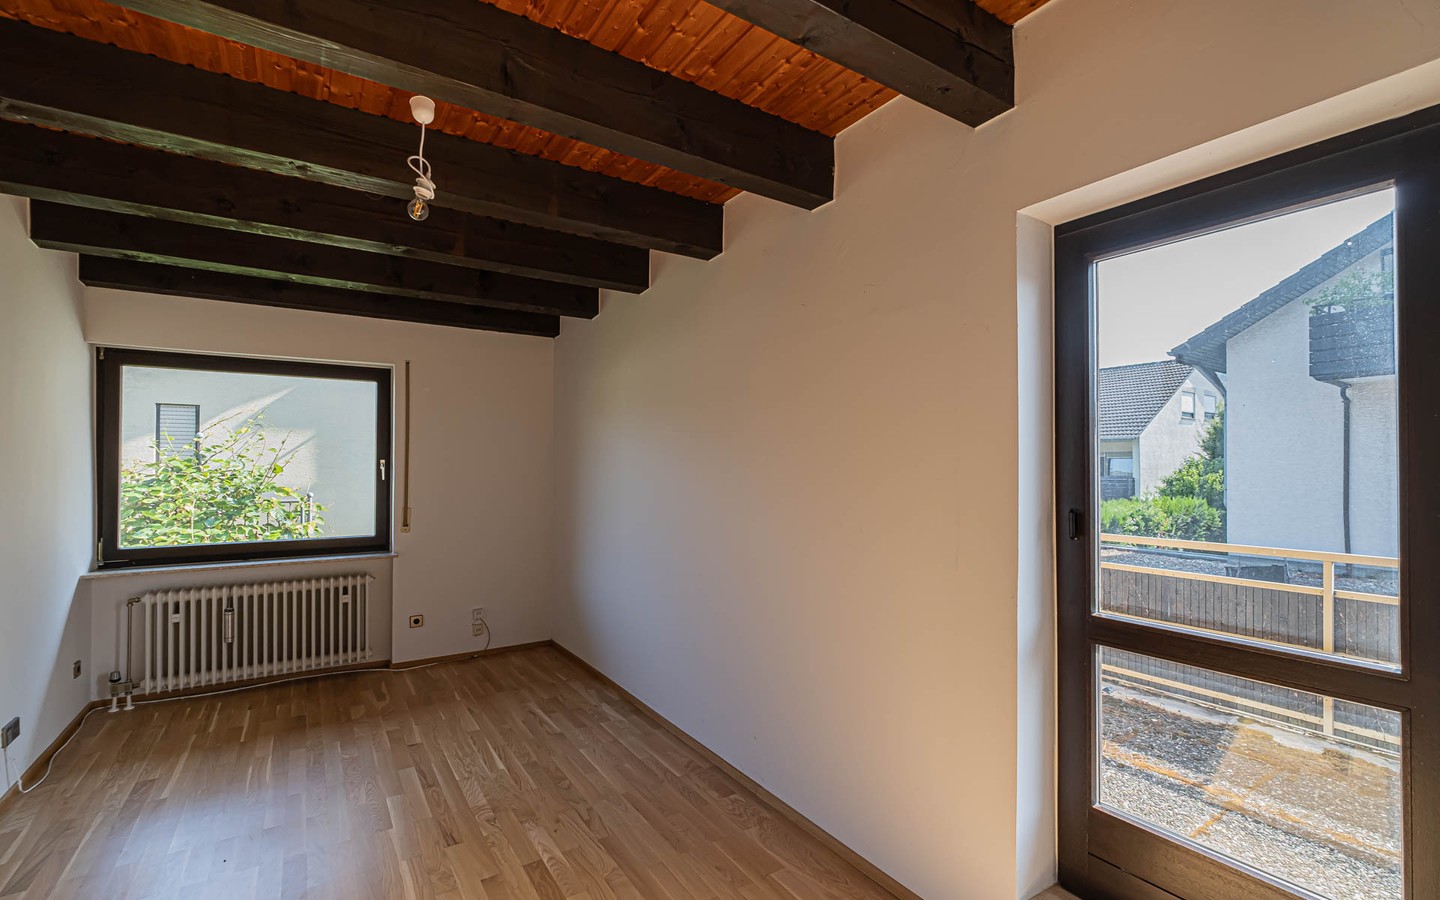 Zimmer mit Balkon OG - Zeitlich begrenztes Mietangebot: Idyllisches Einfamilienhaus mit Einliegerwohnung und kleinem Garten.